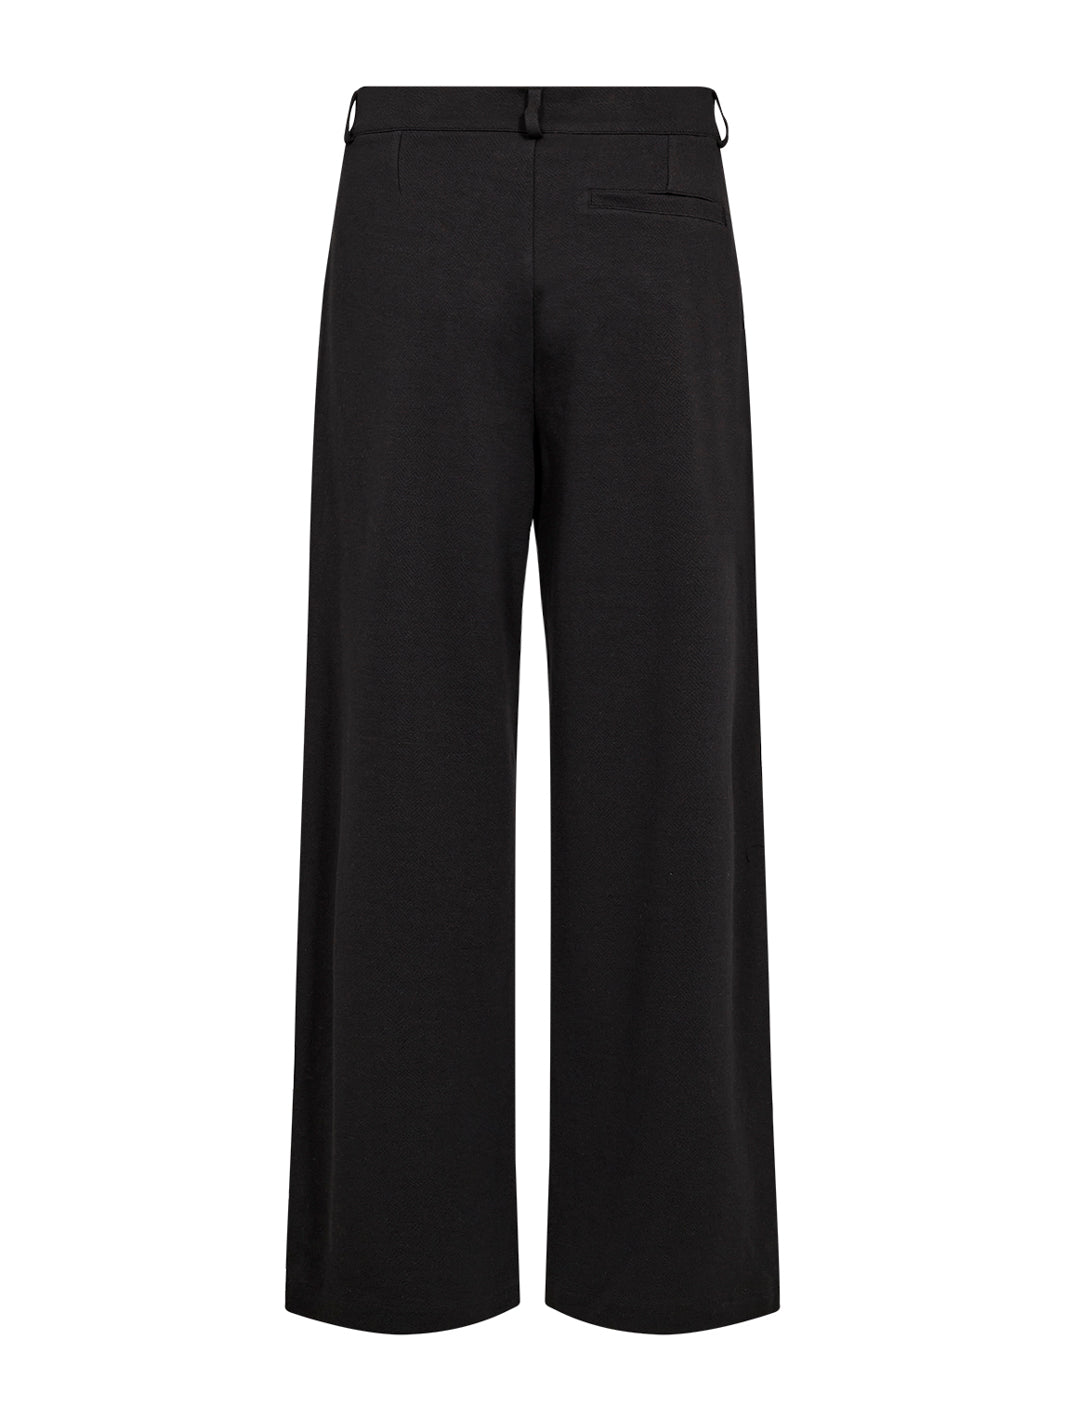 Soya Concept Vasta 3 pants black - Online-Mode